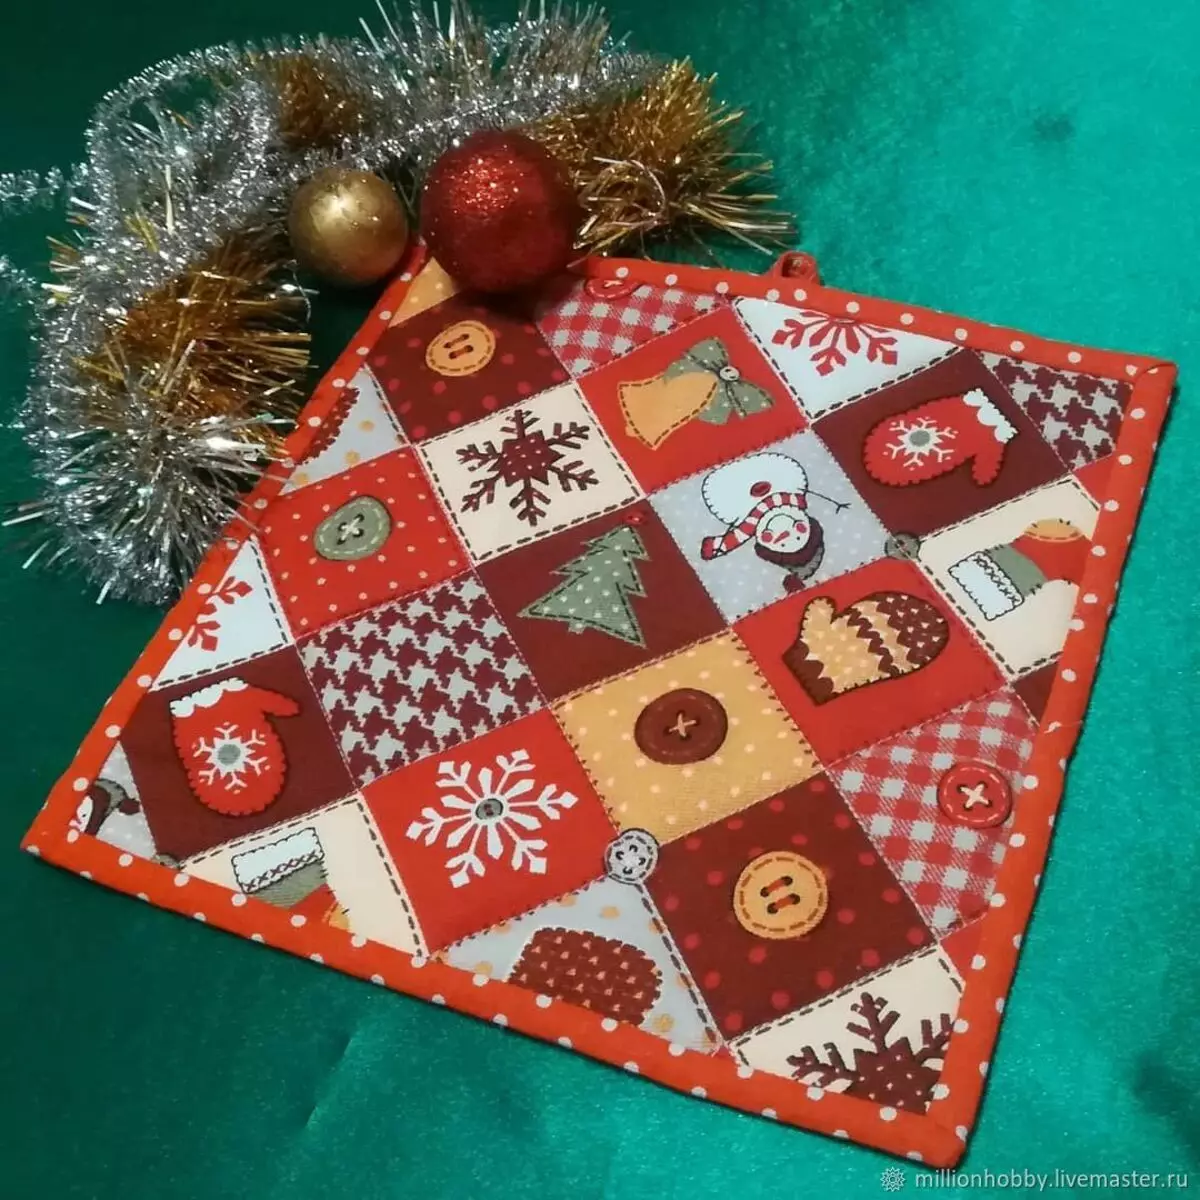 Tags năm mới: Băng dệt kim cho năm mới và theo phong cách chắp vá, gắn thẻ cho một nhà bếp với cây Giáng sinh và với các biểu tượng khác, găng tay đẹp 21793_20